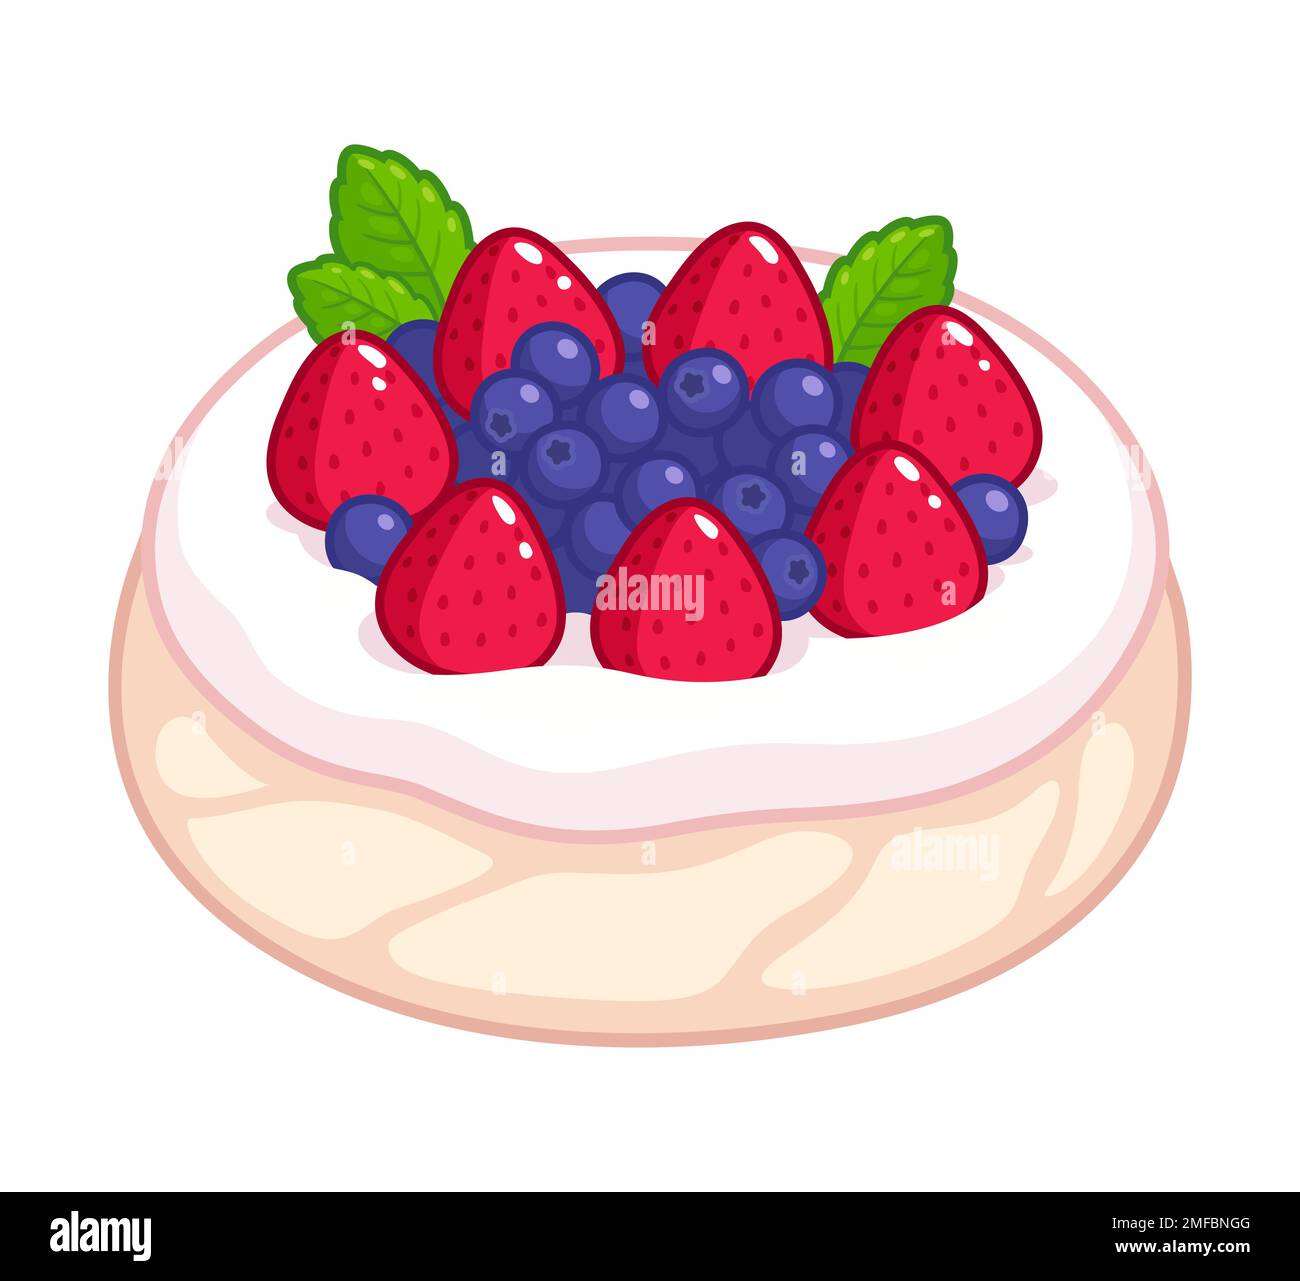 Pavlova, Baiser-Dessert mit Schlagsahne, frischen Erdbeeren und Brombeeren. Traditionelles australisches Gebäck. Von Hand gezeichnete Vektor-Clipgrafien, illustriert Stock Vektor